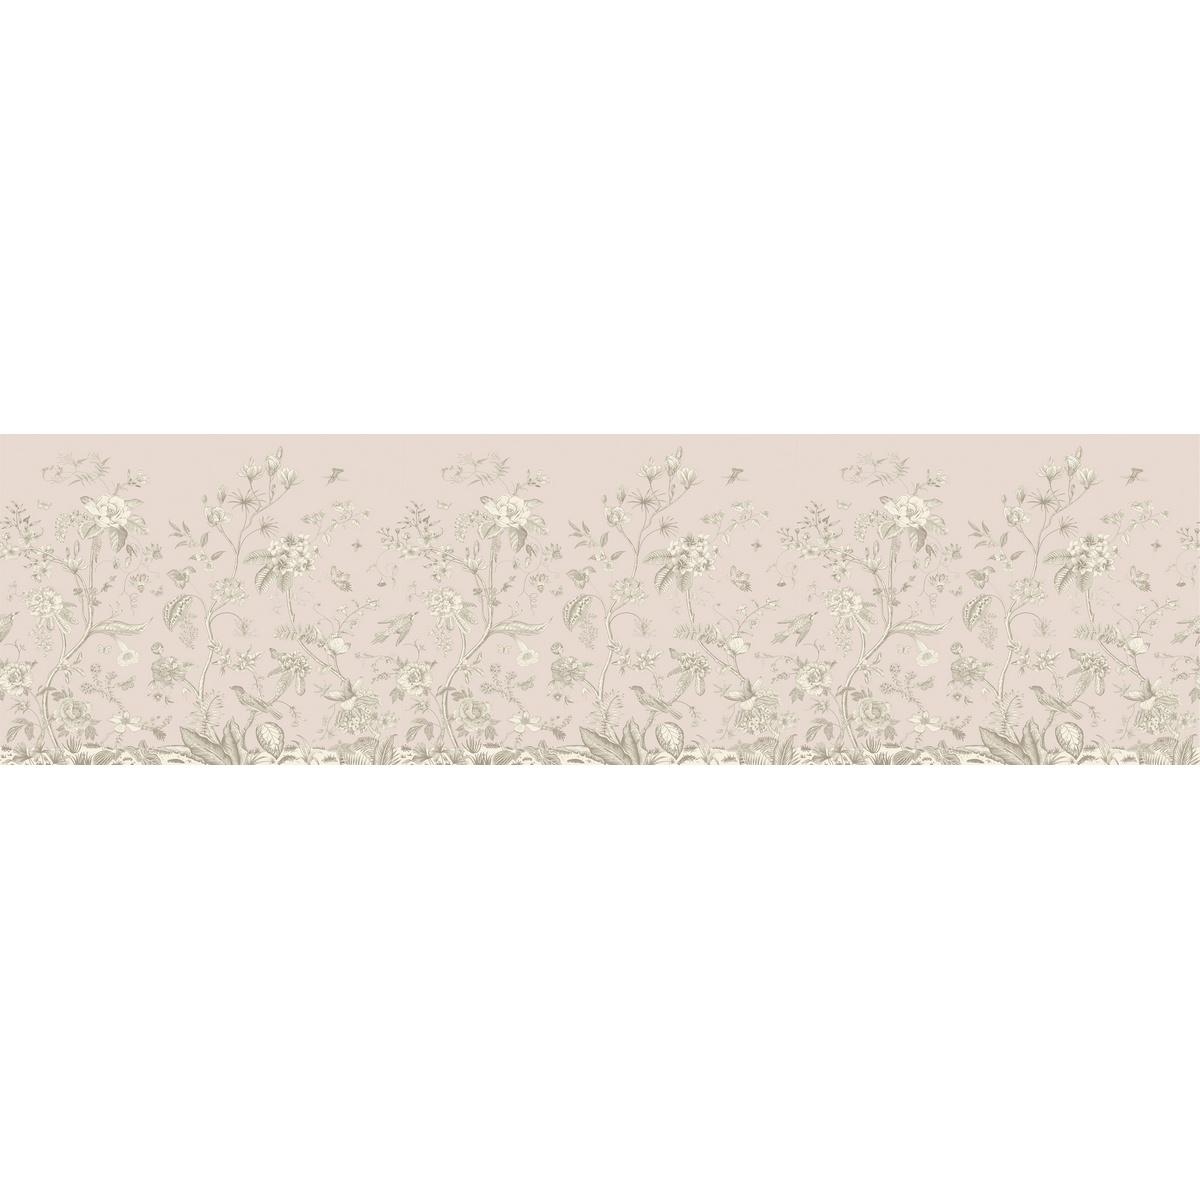 Dekoracyjny pas samoprzylepny Old graphic florals, 500 x 13,8 cm